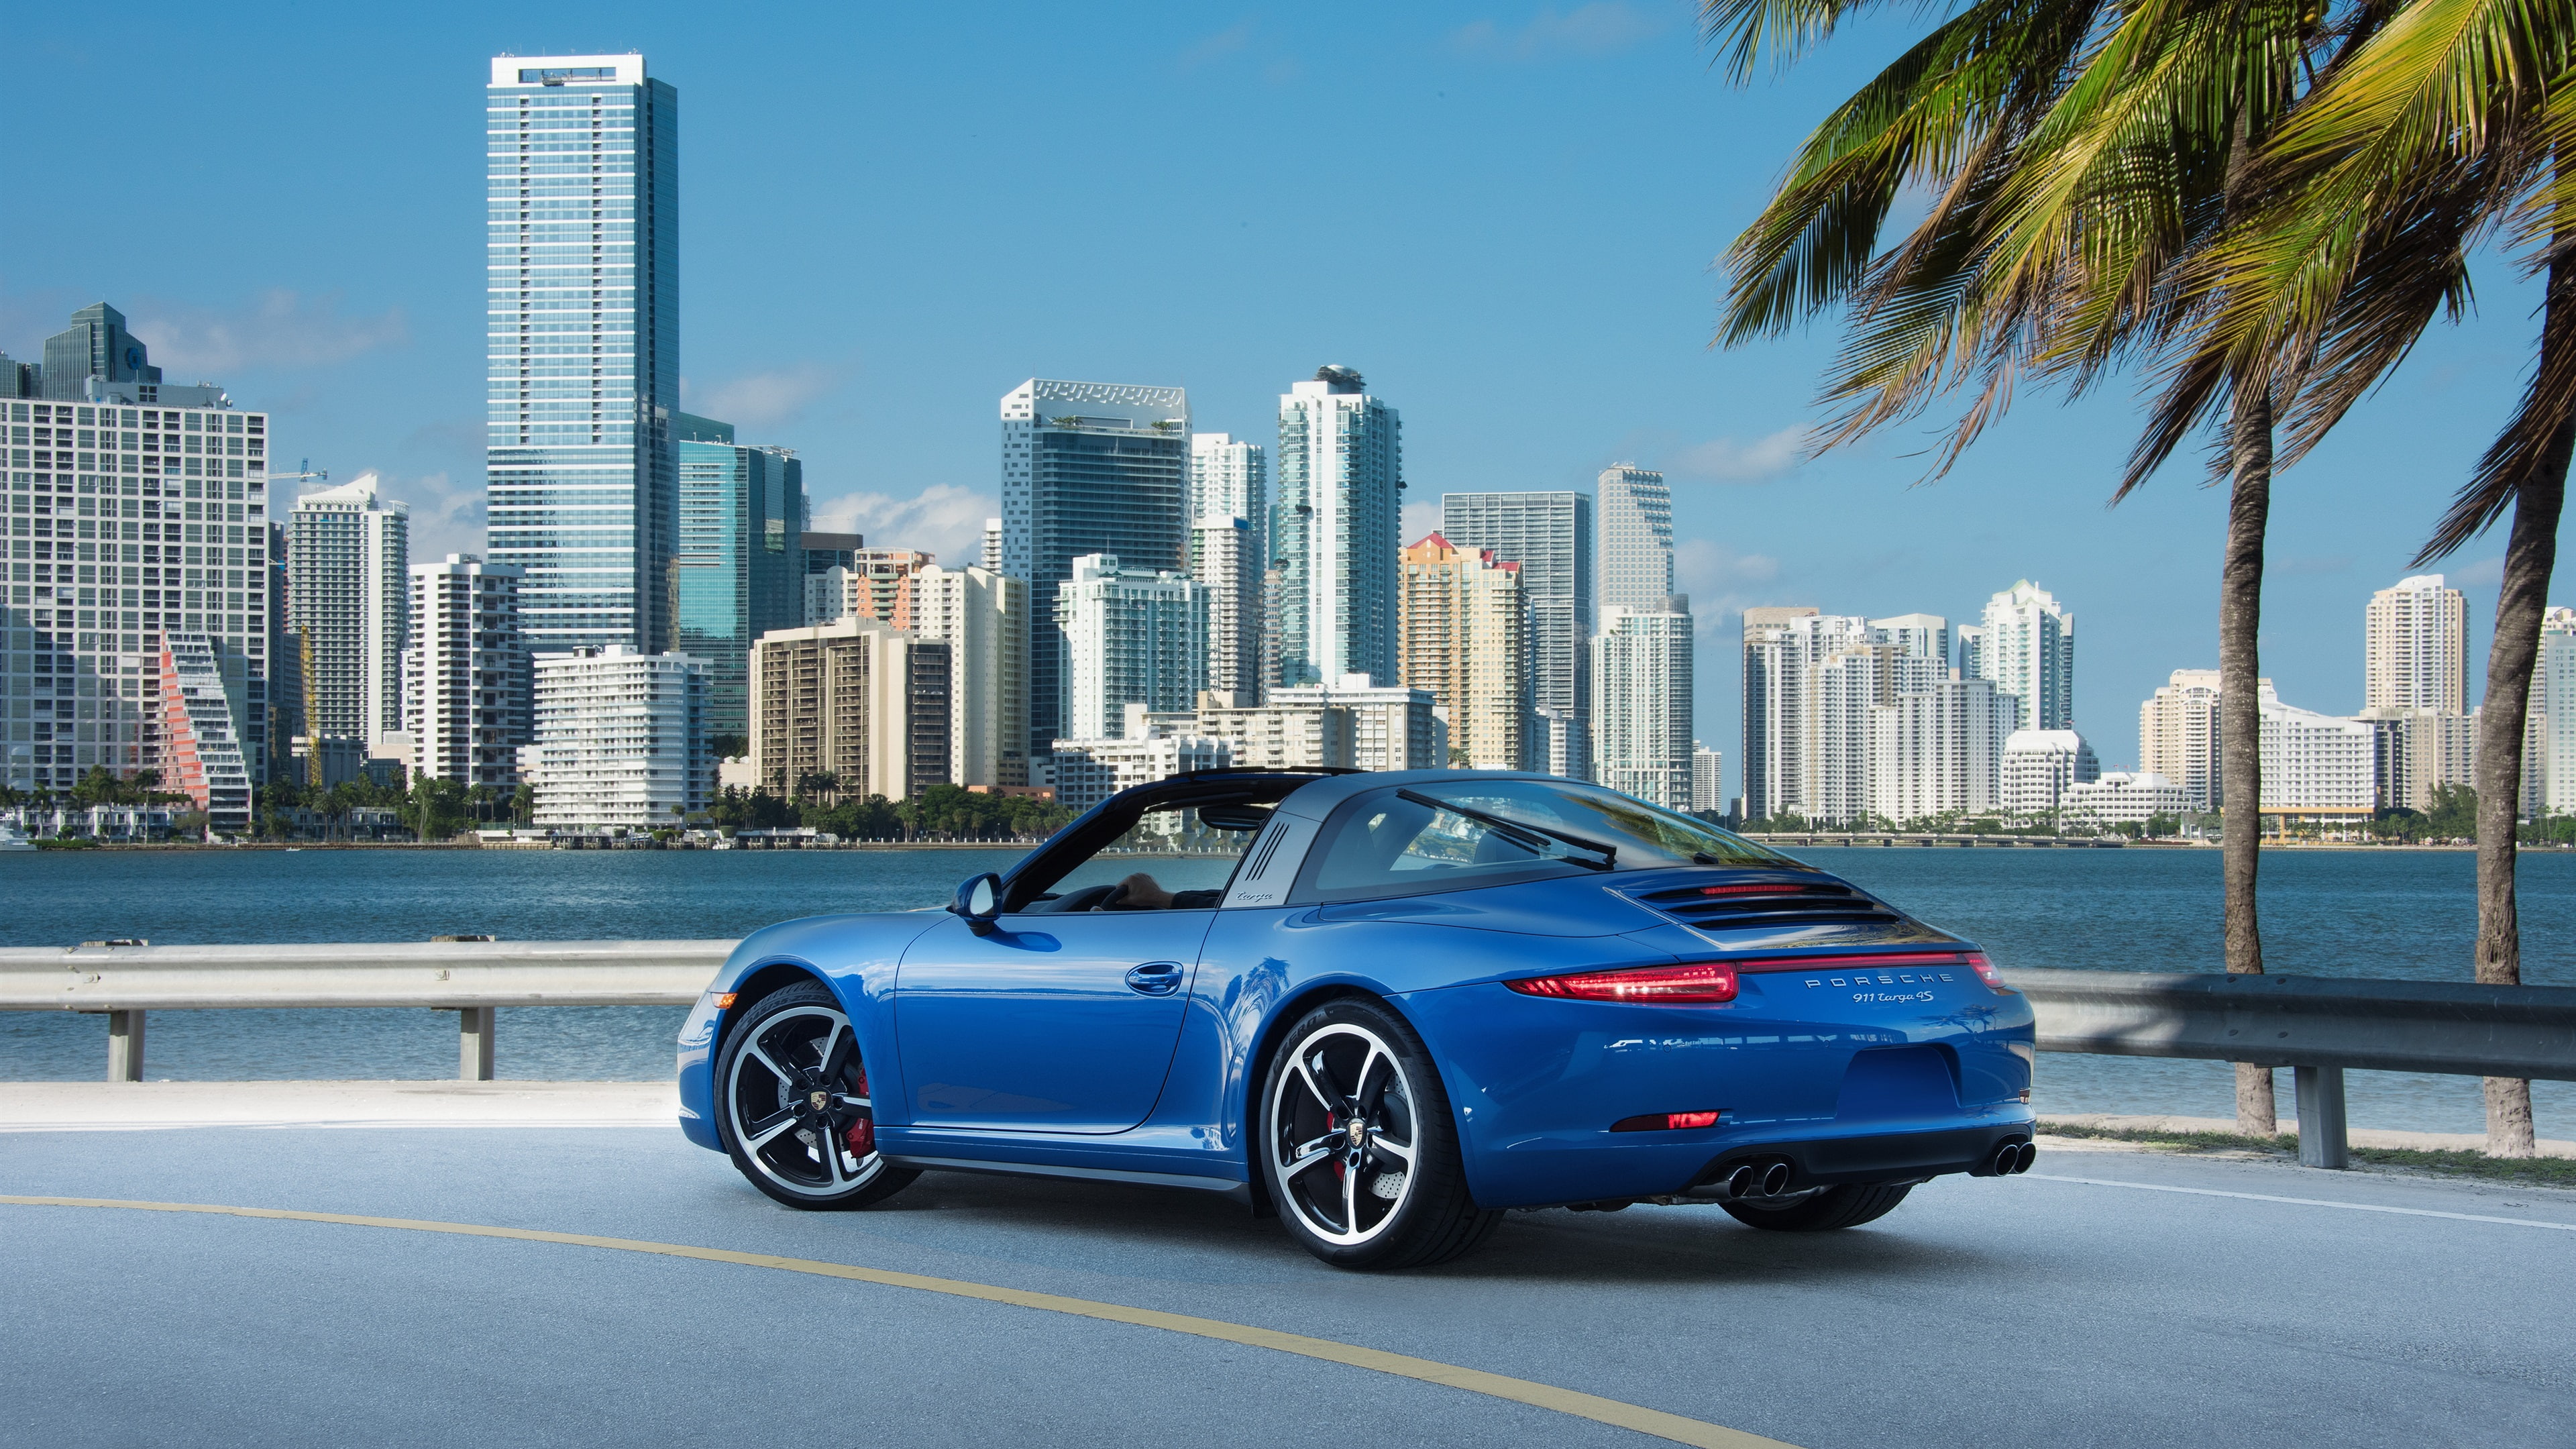 Porsche 911 Targa 4S blue supercar at city